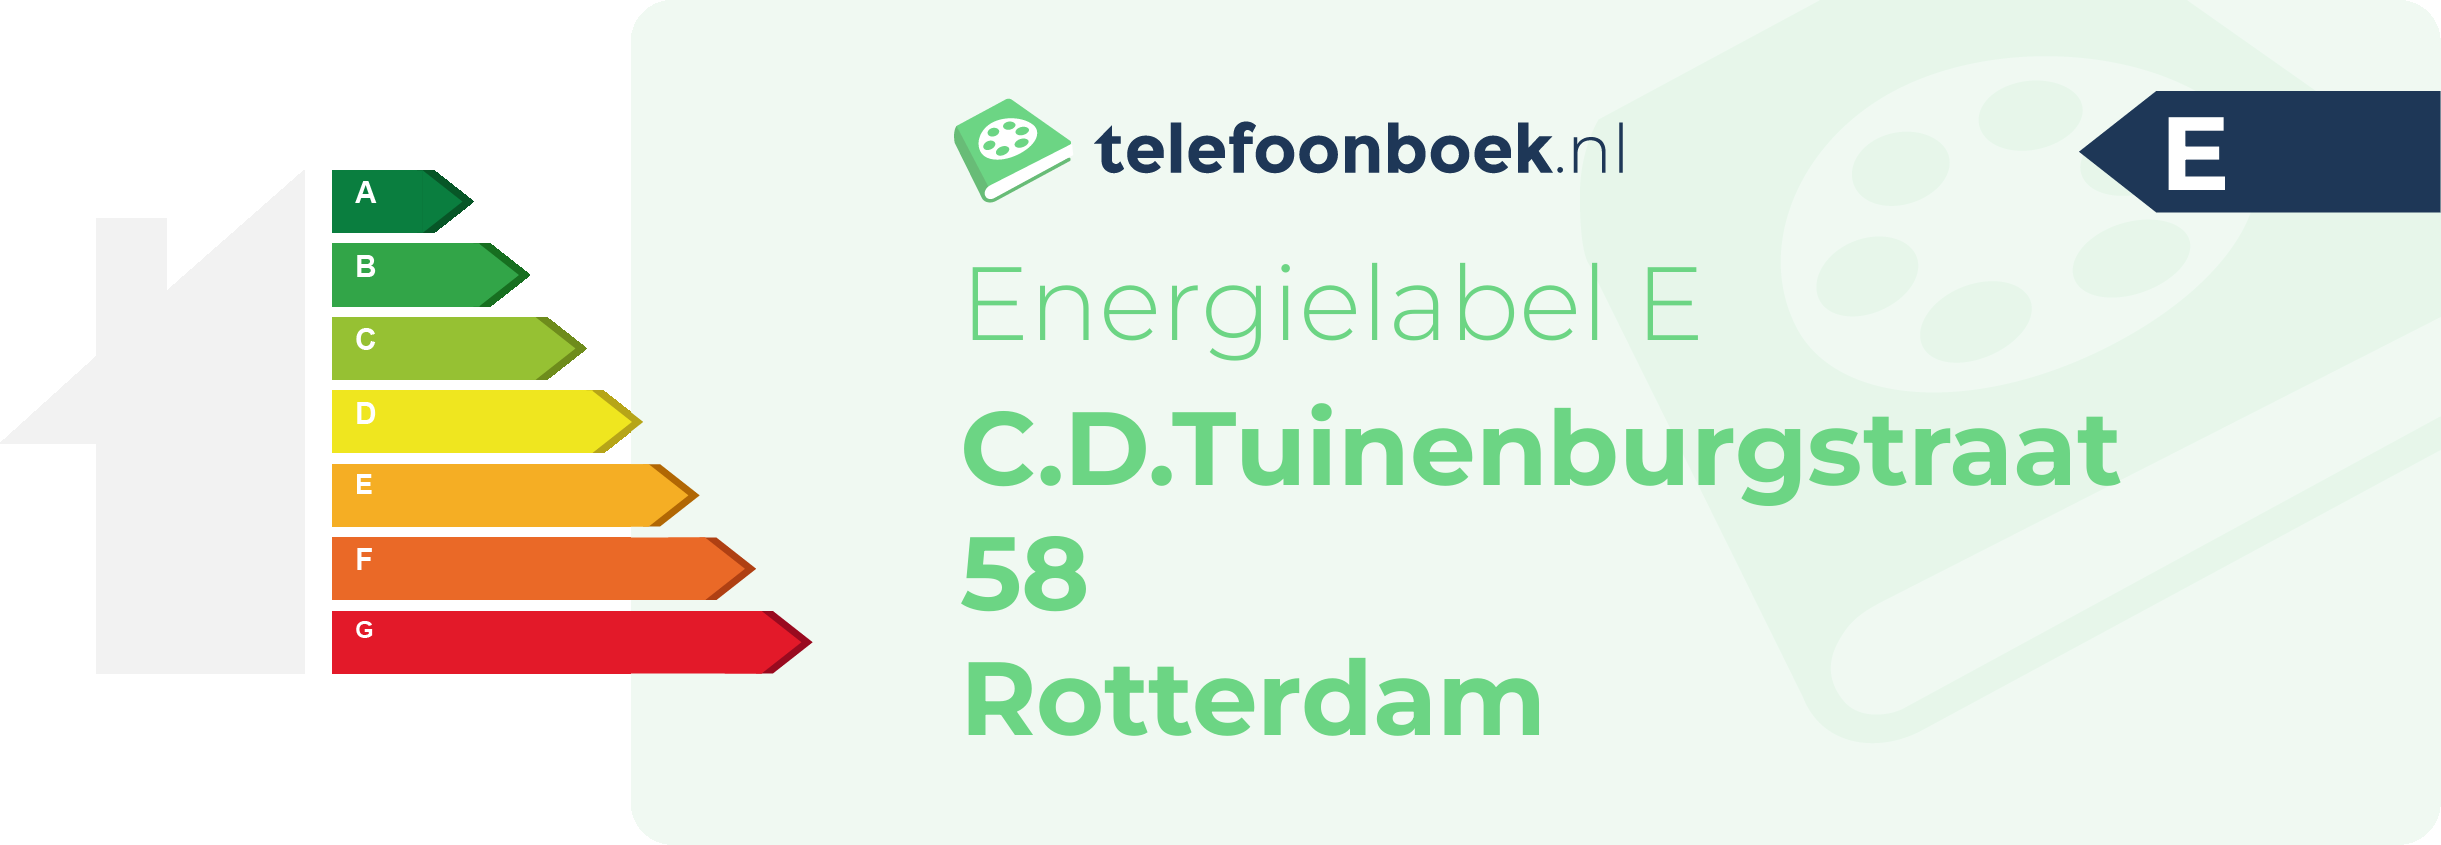 Energielabel C.D.Tuinenburgstraat 58 Rotterdam